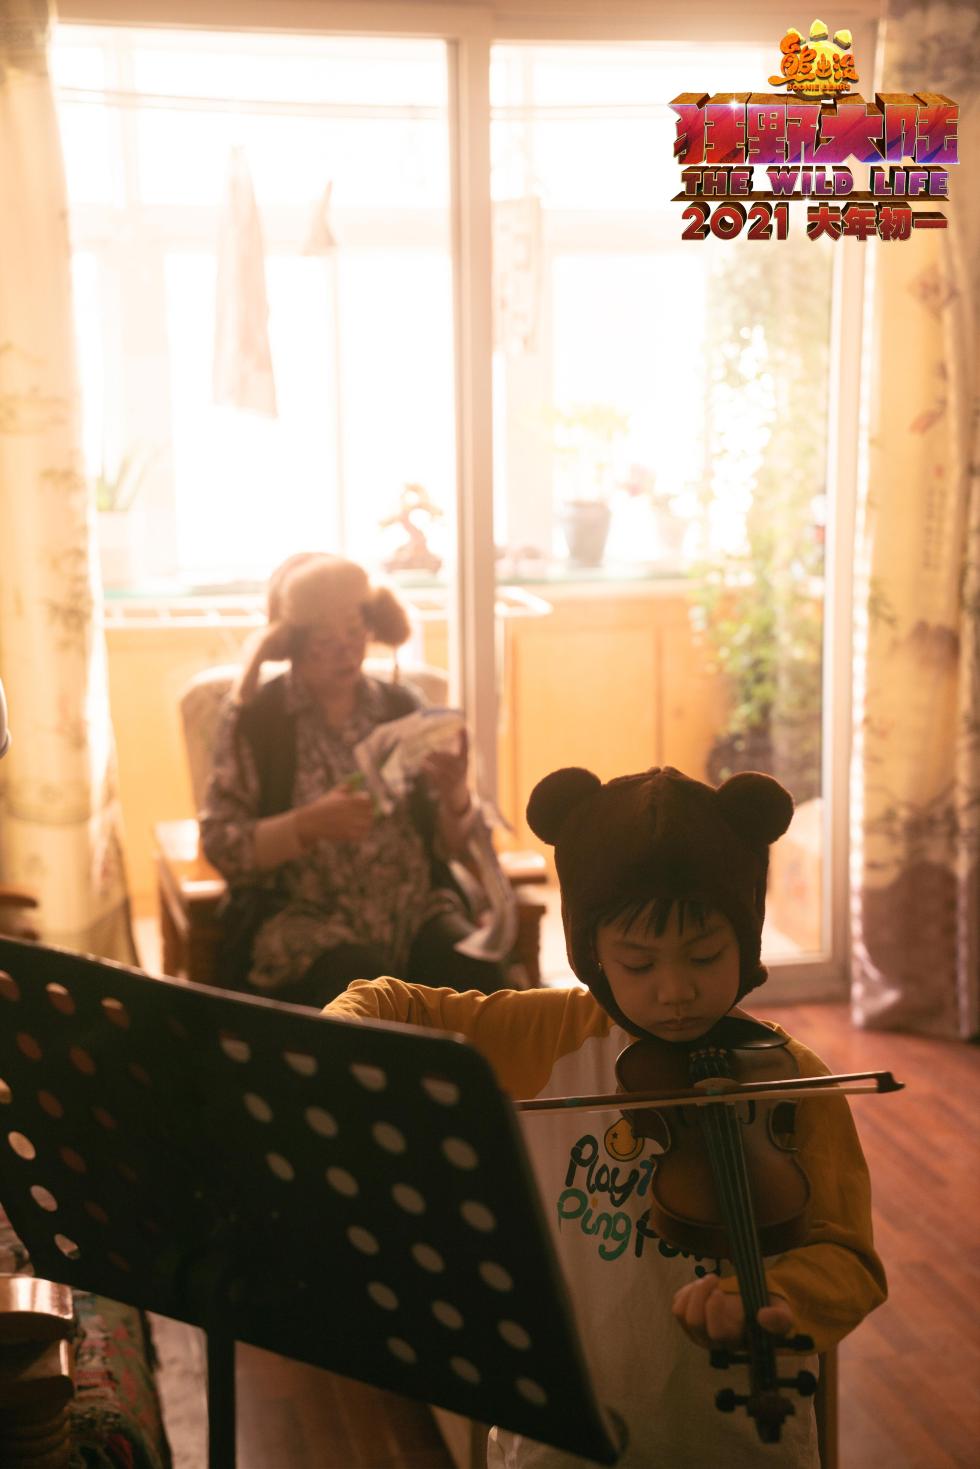 《熊出没·狂野大陆》真人短片《奶奶的熊》奶奶陪童年王勇敢练小提琴剧照